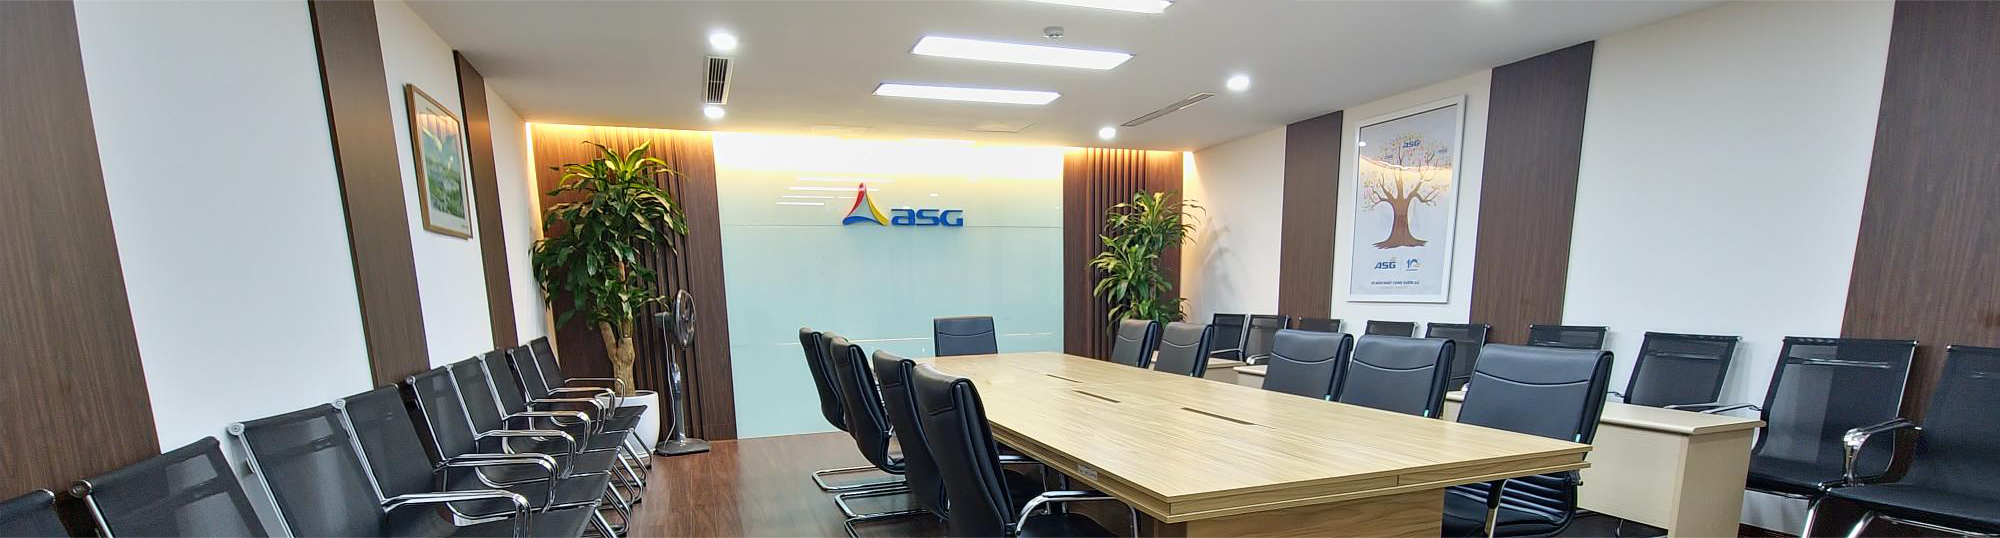 Công bố thông tin về việc chấm dứt hoạt động của Công ty Cổ phần Tập đoàn ASG – Chi nhánh Thái Nguyên.